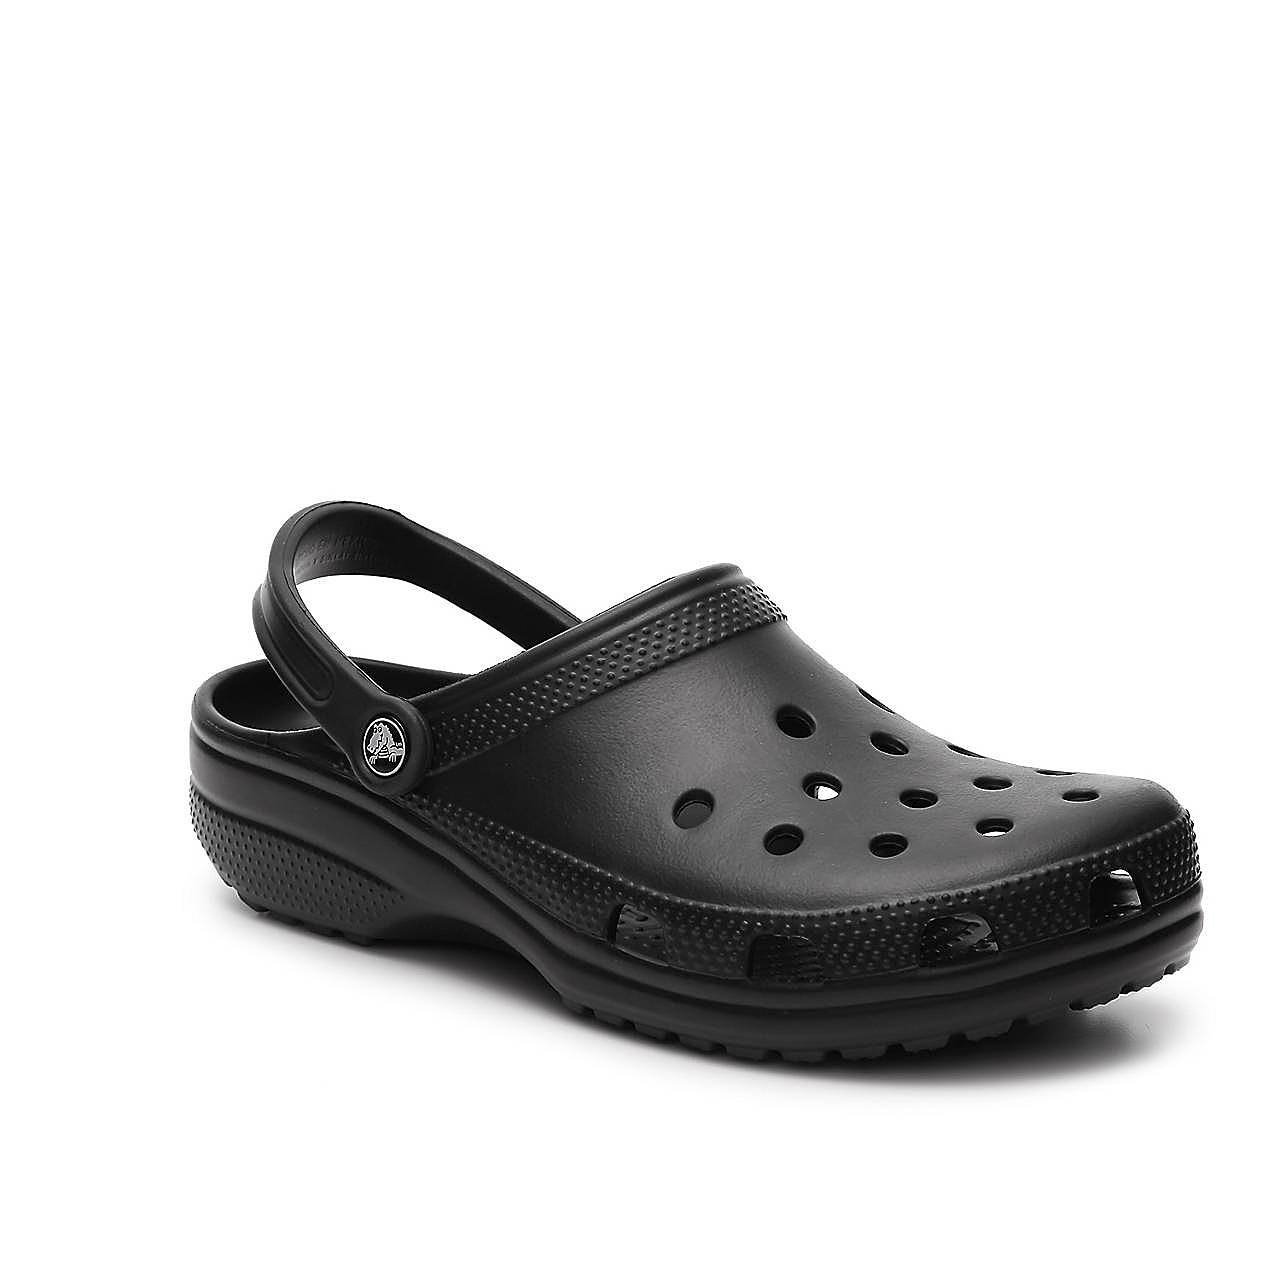 Crocs Classic Clog | Men's | Black | Size Women's 12 / Men's 10 | Clogs | Sandals